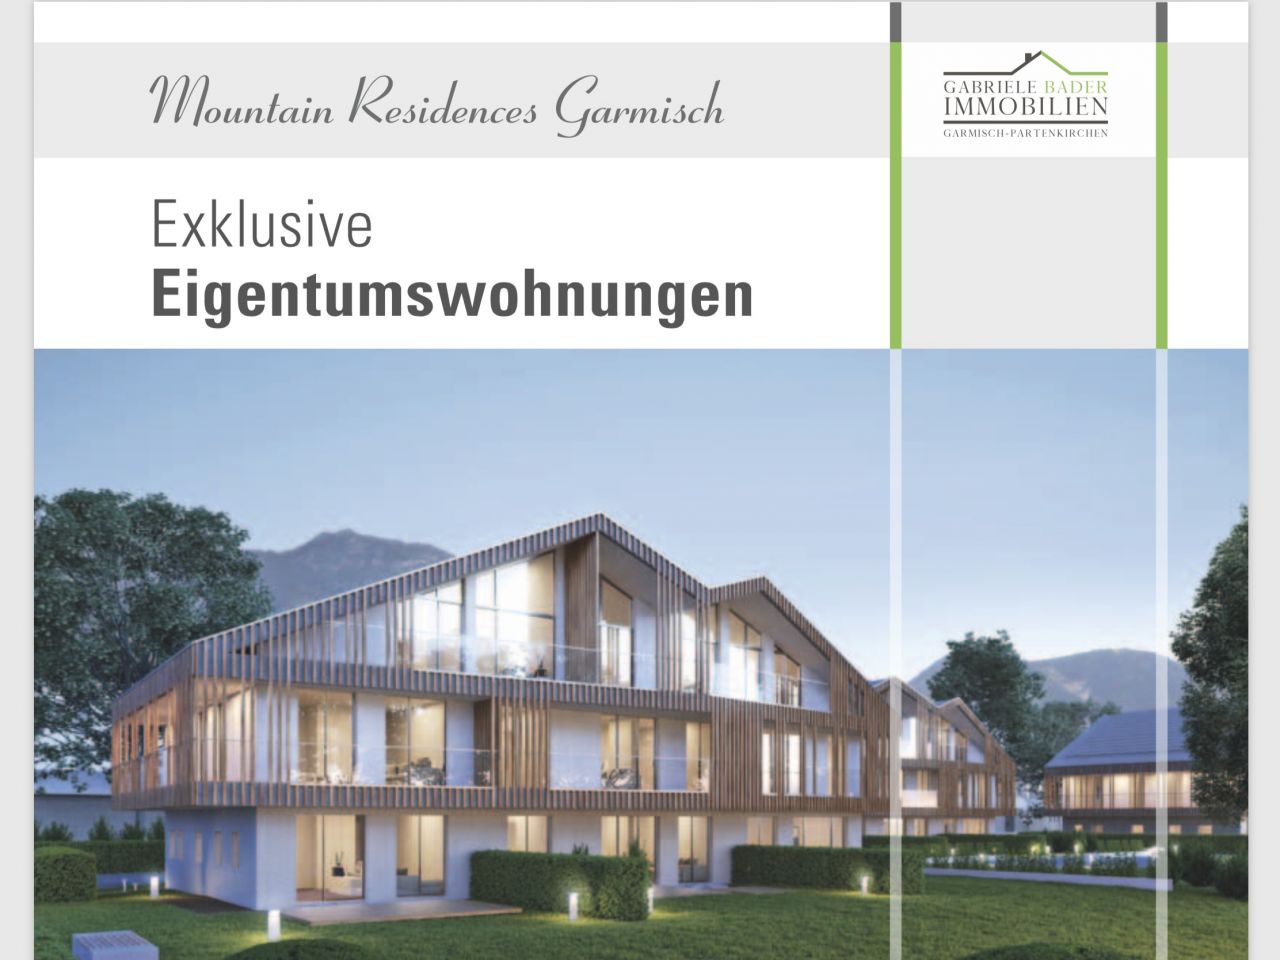 "Mountain Residences Garmisch"